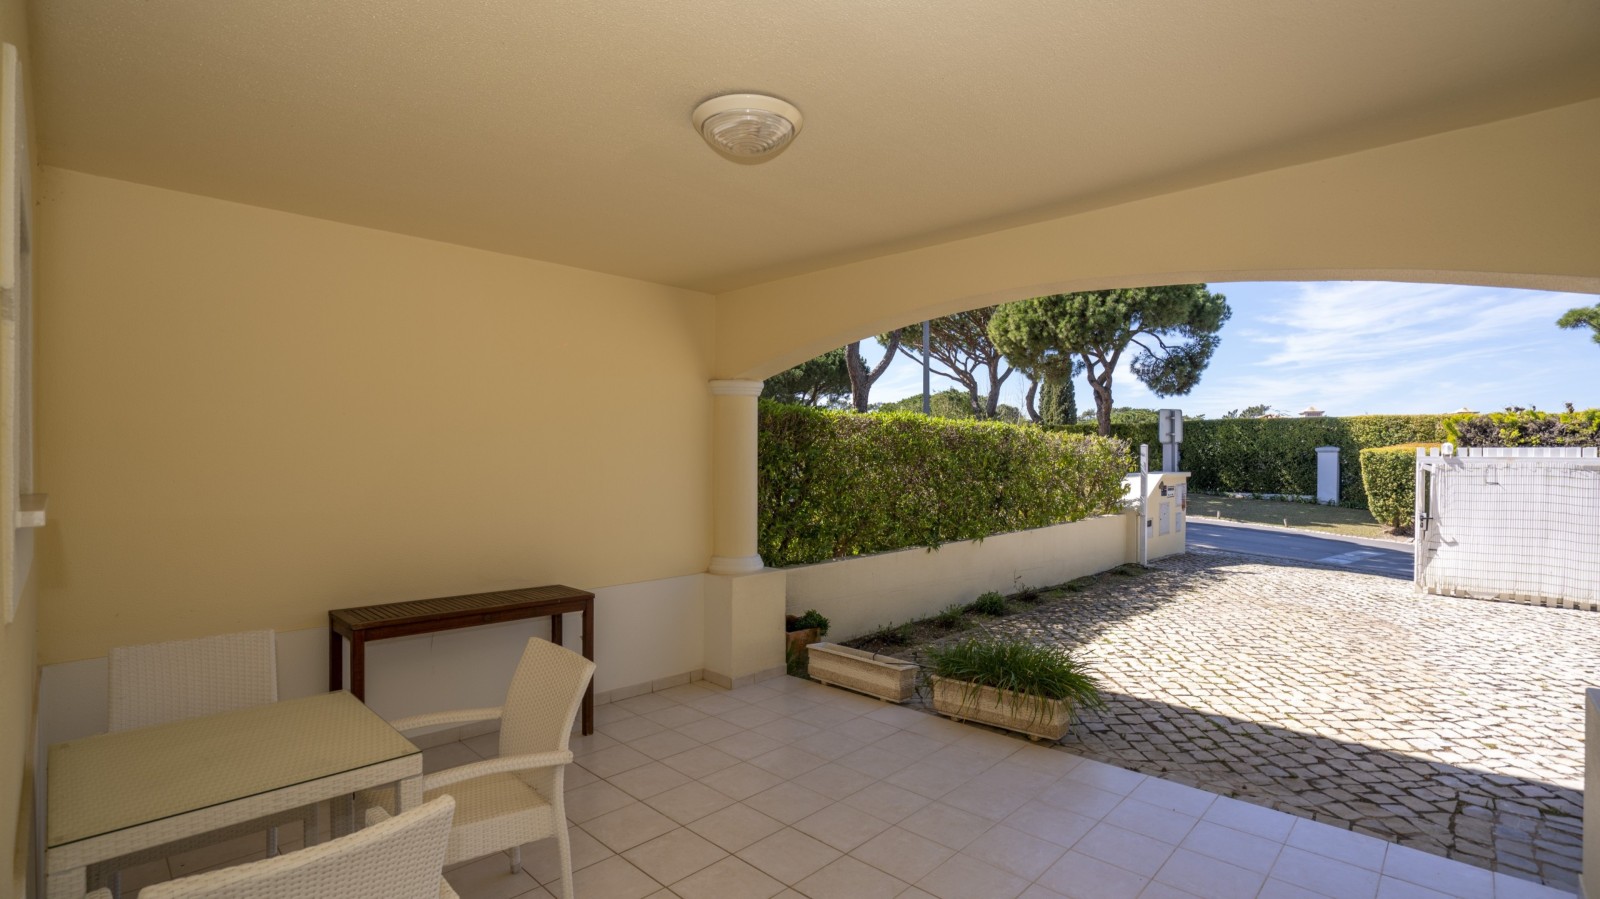 Villa adosada de 4 dormitorios, con piscina, en venta en Vilamoura, Algarve_237482